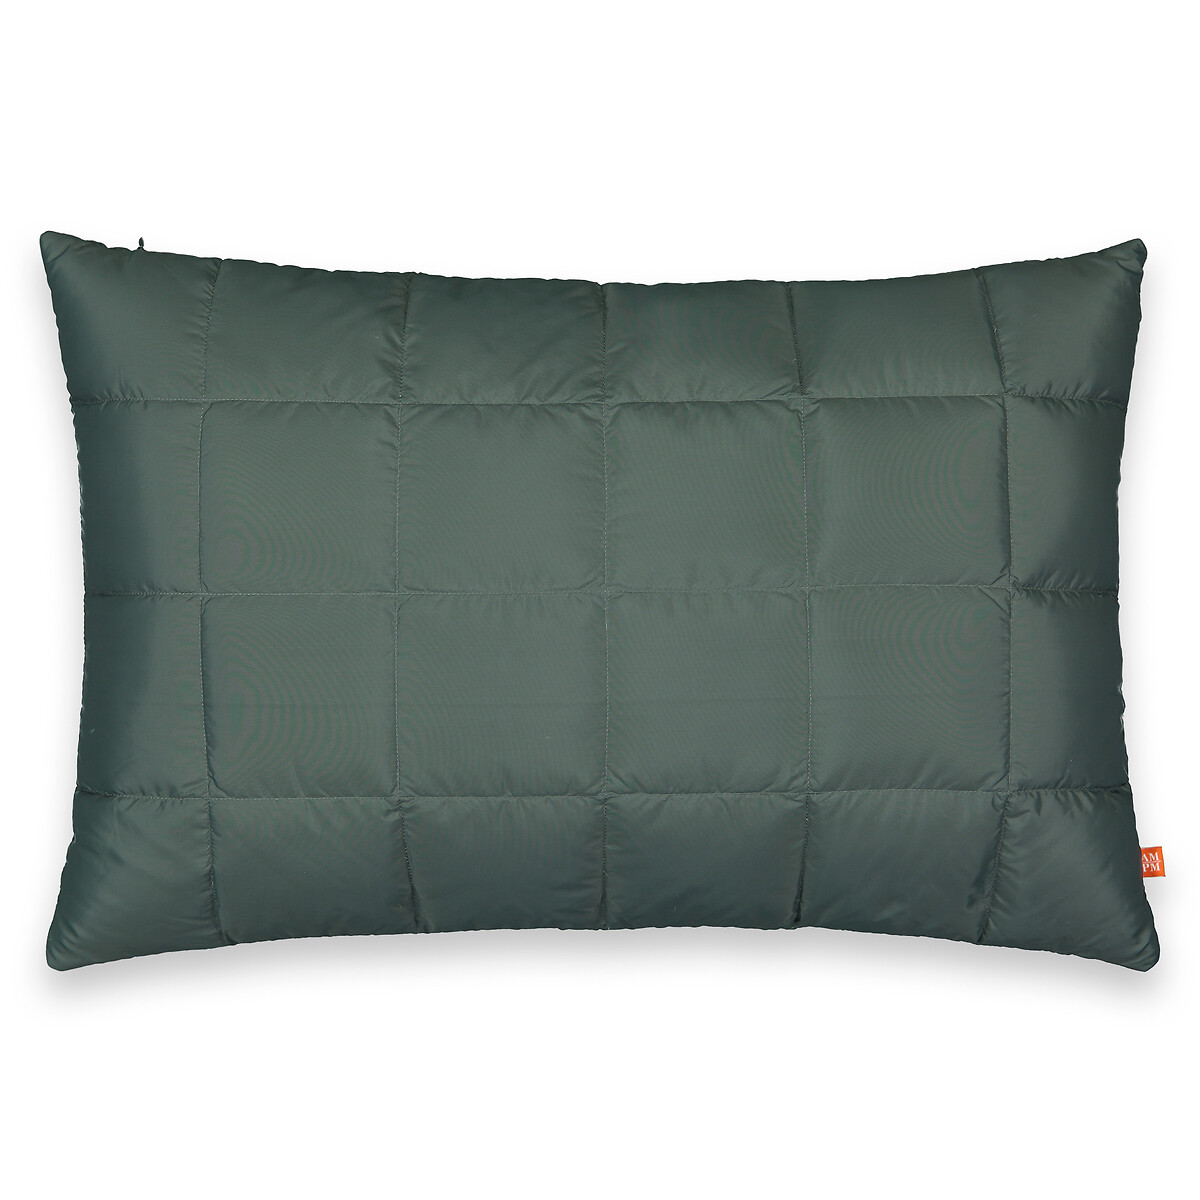 Чехол стеганый на подушку Couning 100 полиэстер 60 x 40 см черный чехол на подушку стеганый из 100 хлопка milano 50 x 30 см зеленый